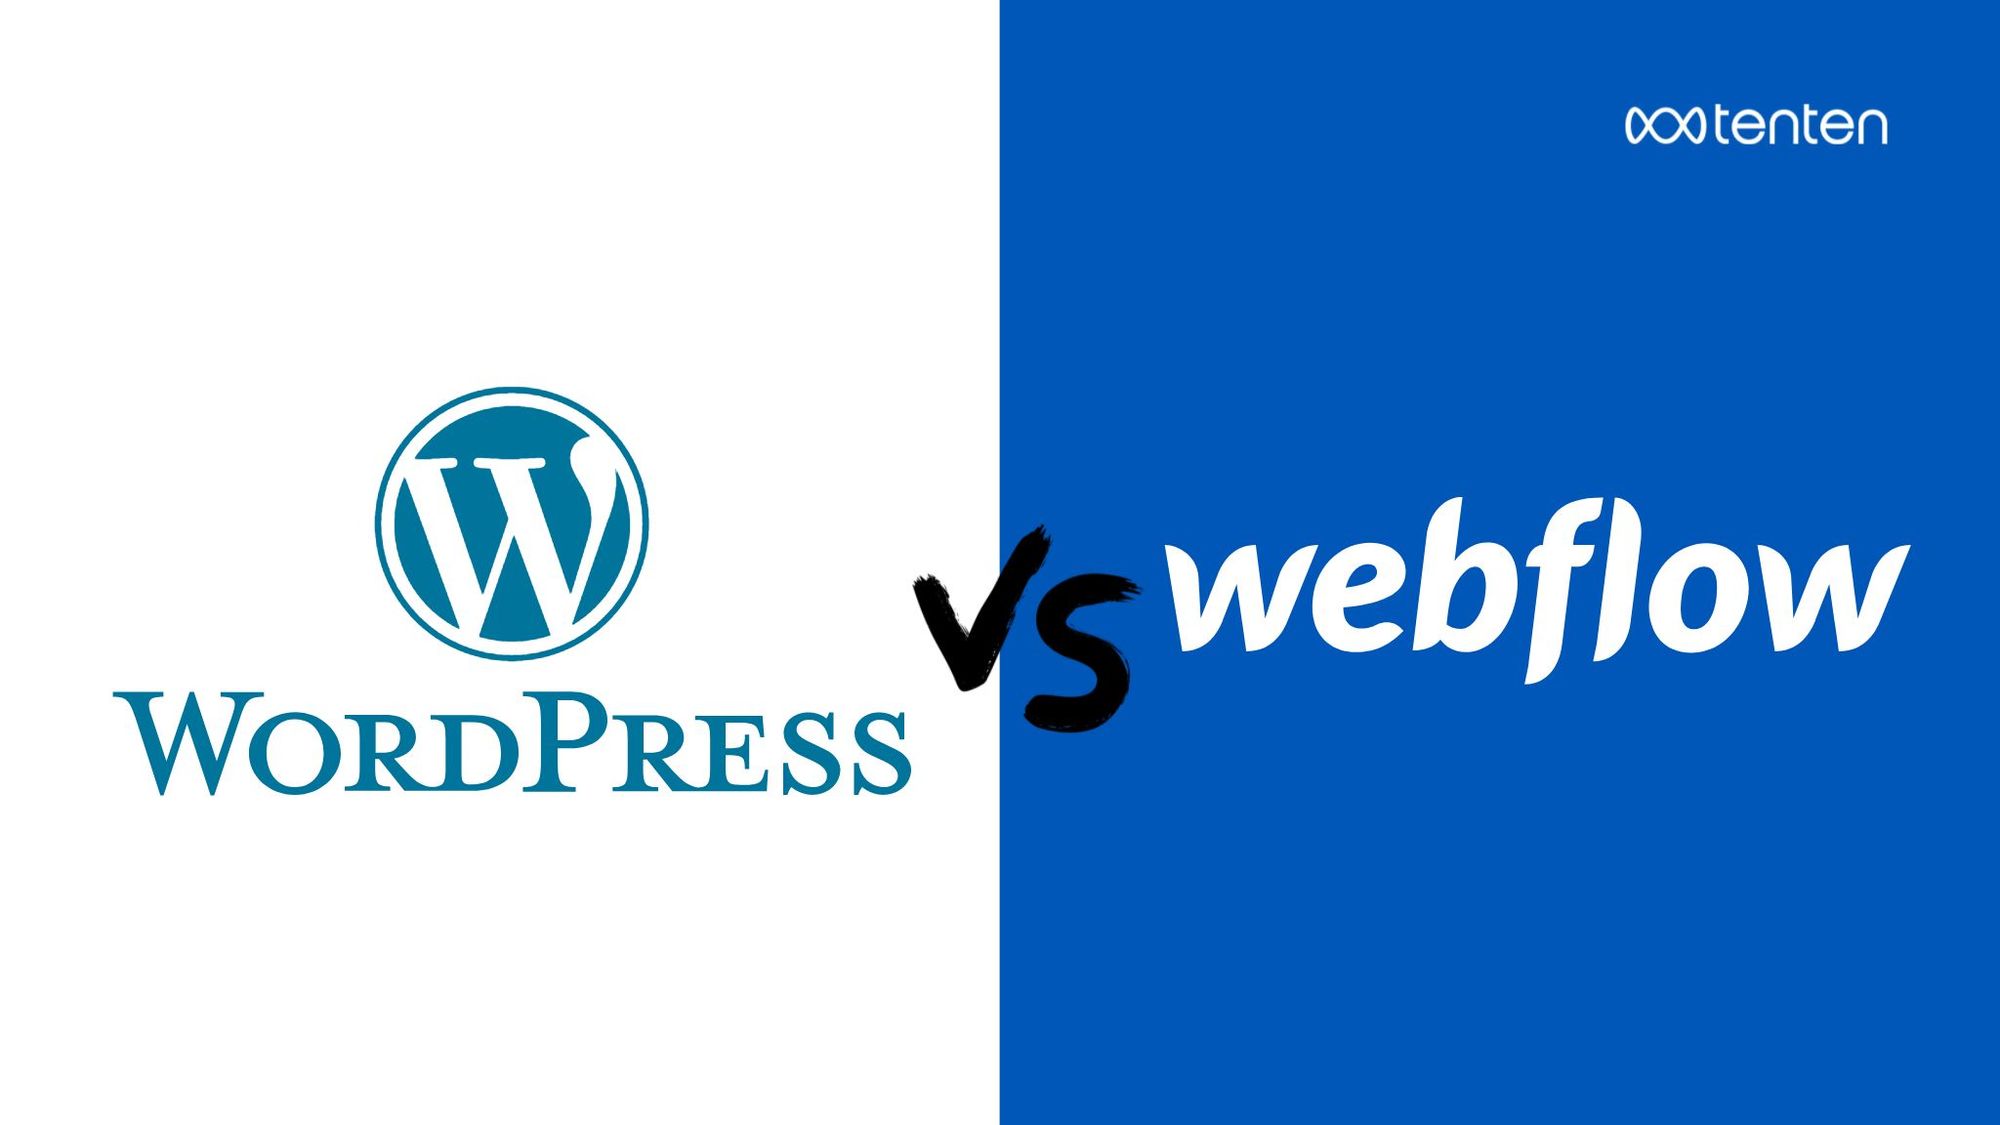 Webflow vs WordPress 差異? 超詳解比較